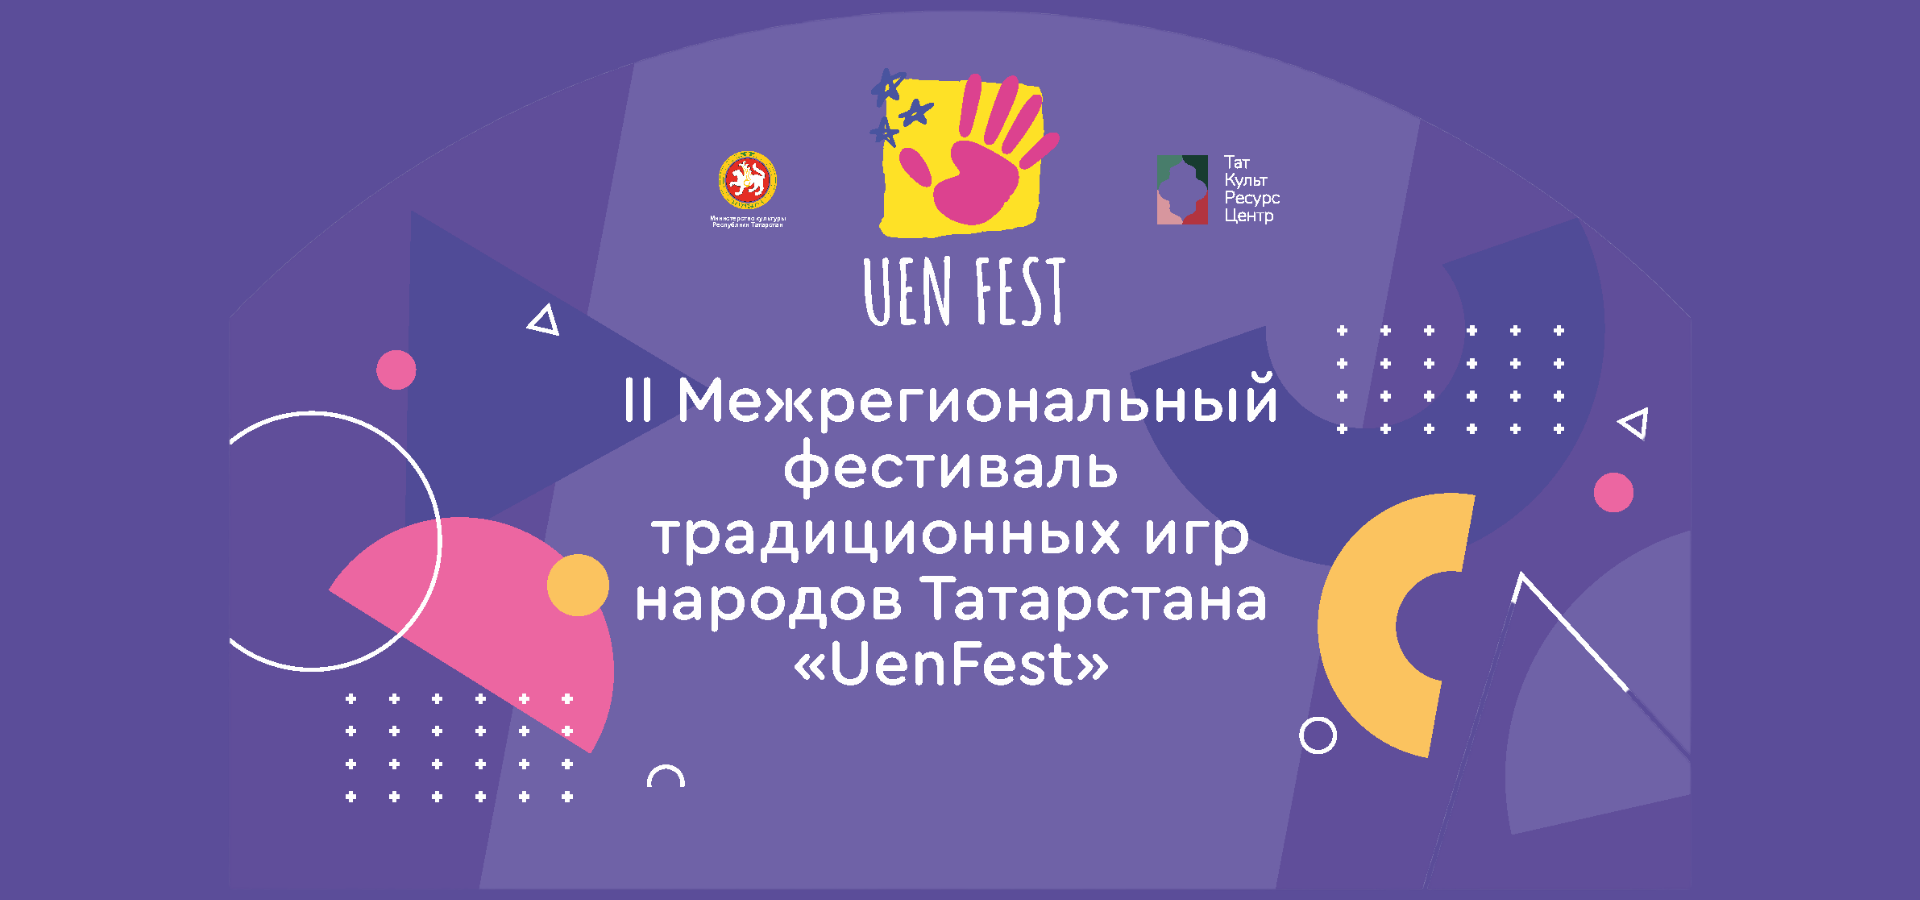 1 июня финалисты «UenFest» встретятся на Пушечном дворе Казанского Кремля